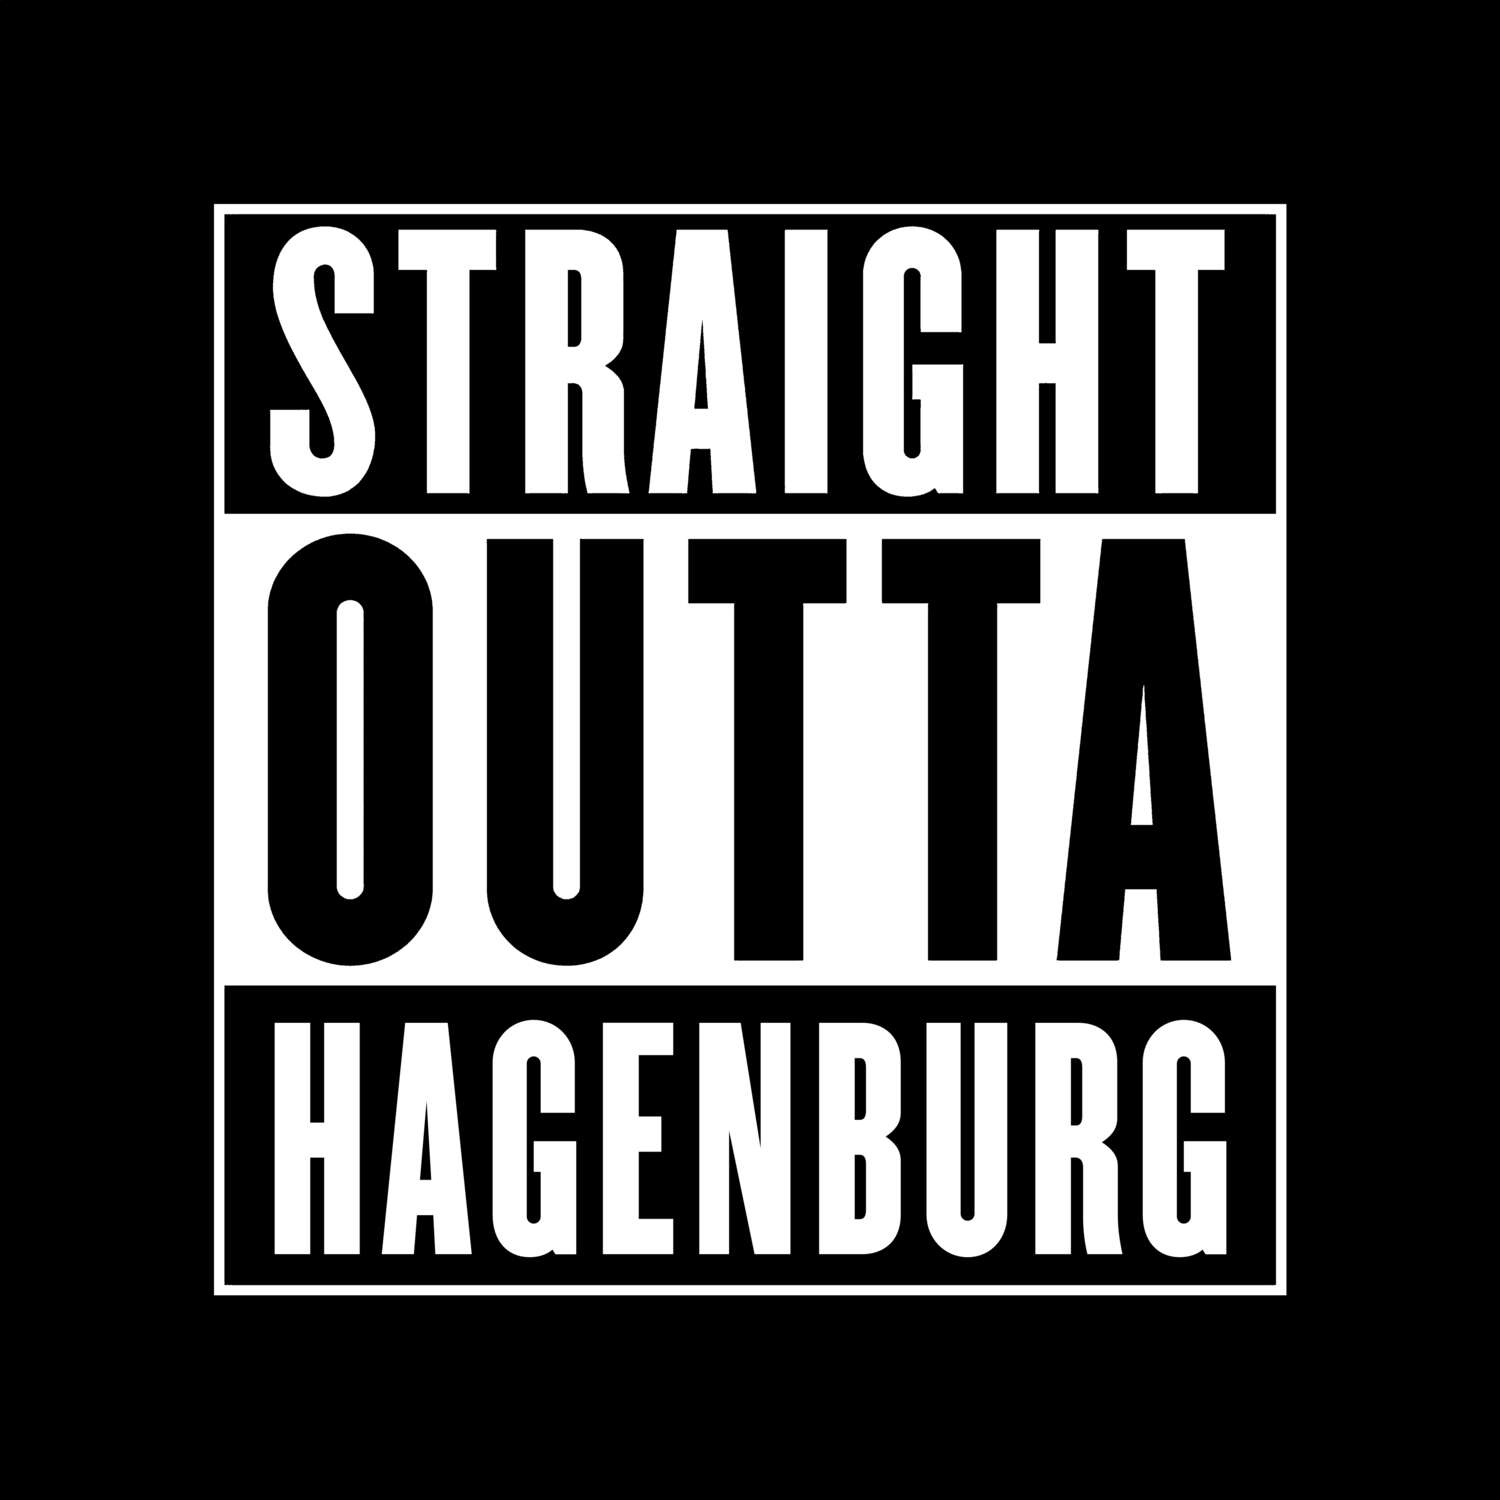 Hagenburg T-Shirt »Straight Outta«